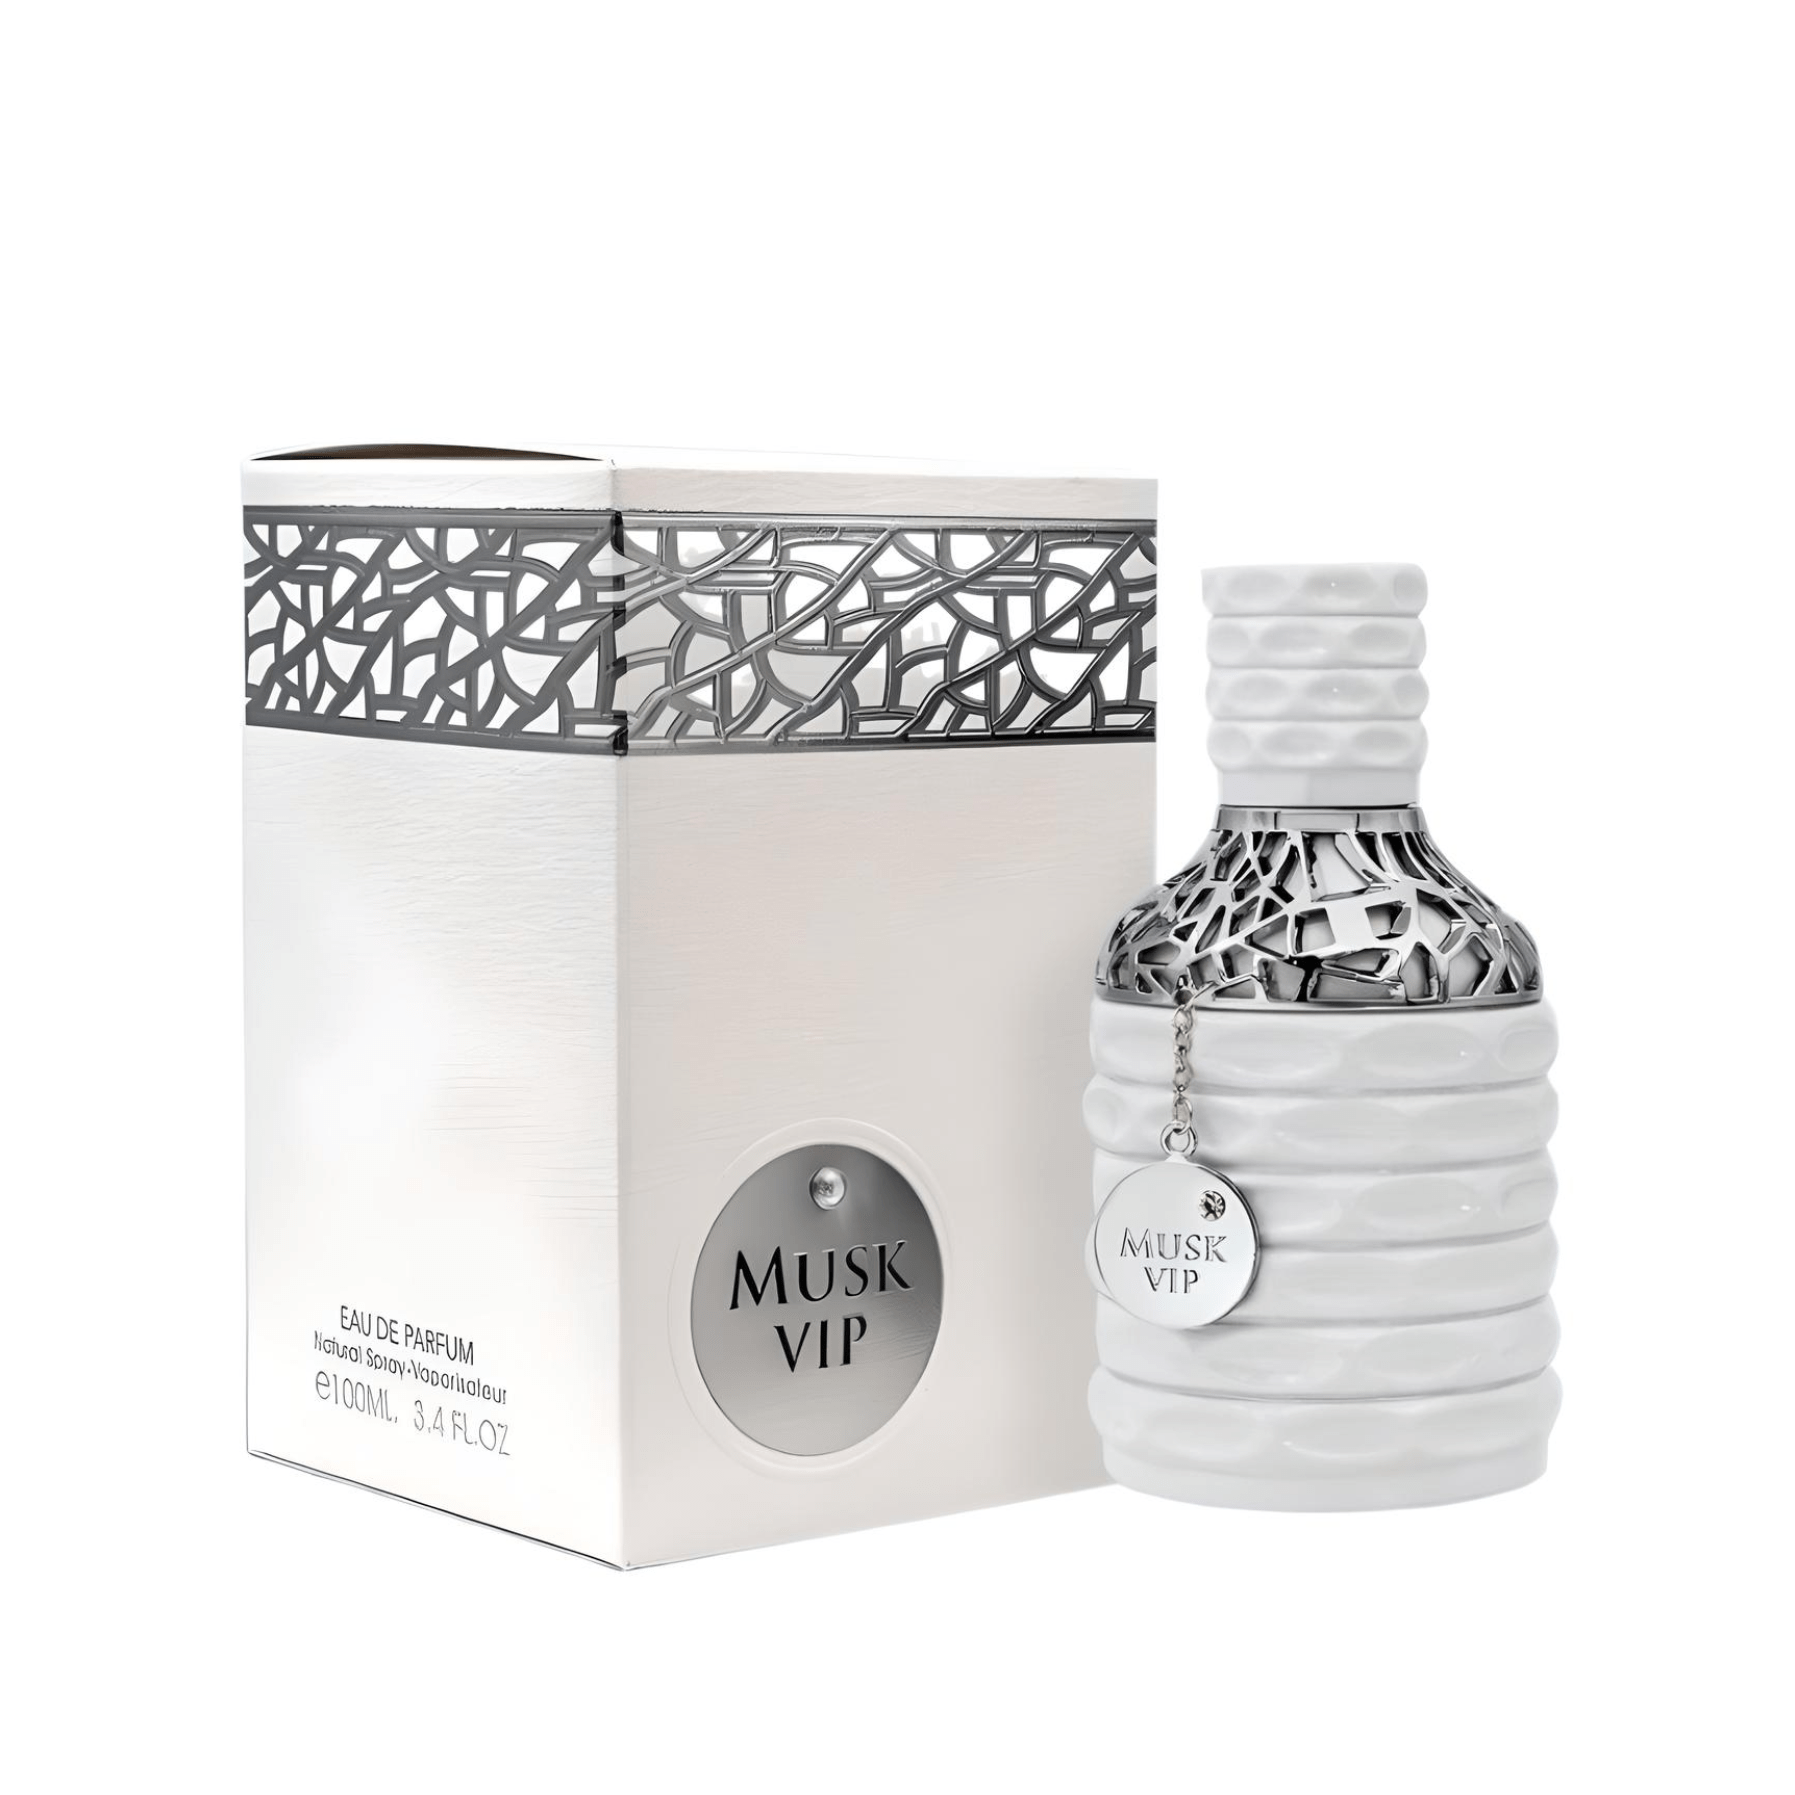 Musk Vip Perfume / Eau De Parfum 100Ml By Fa Paris (Fragrance World)